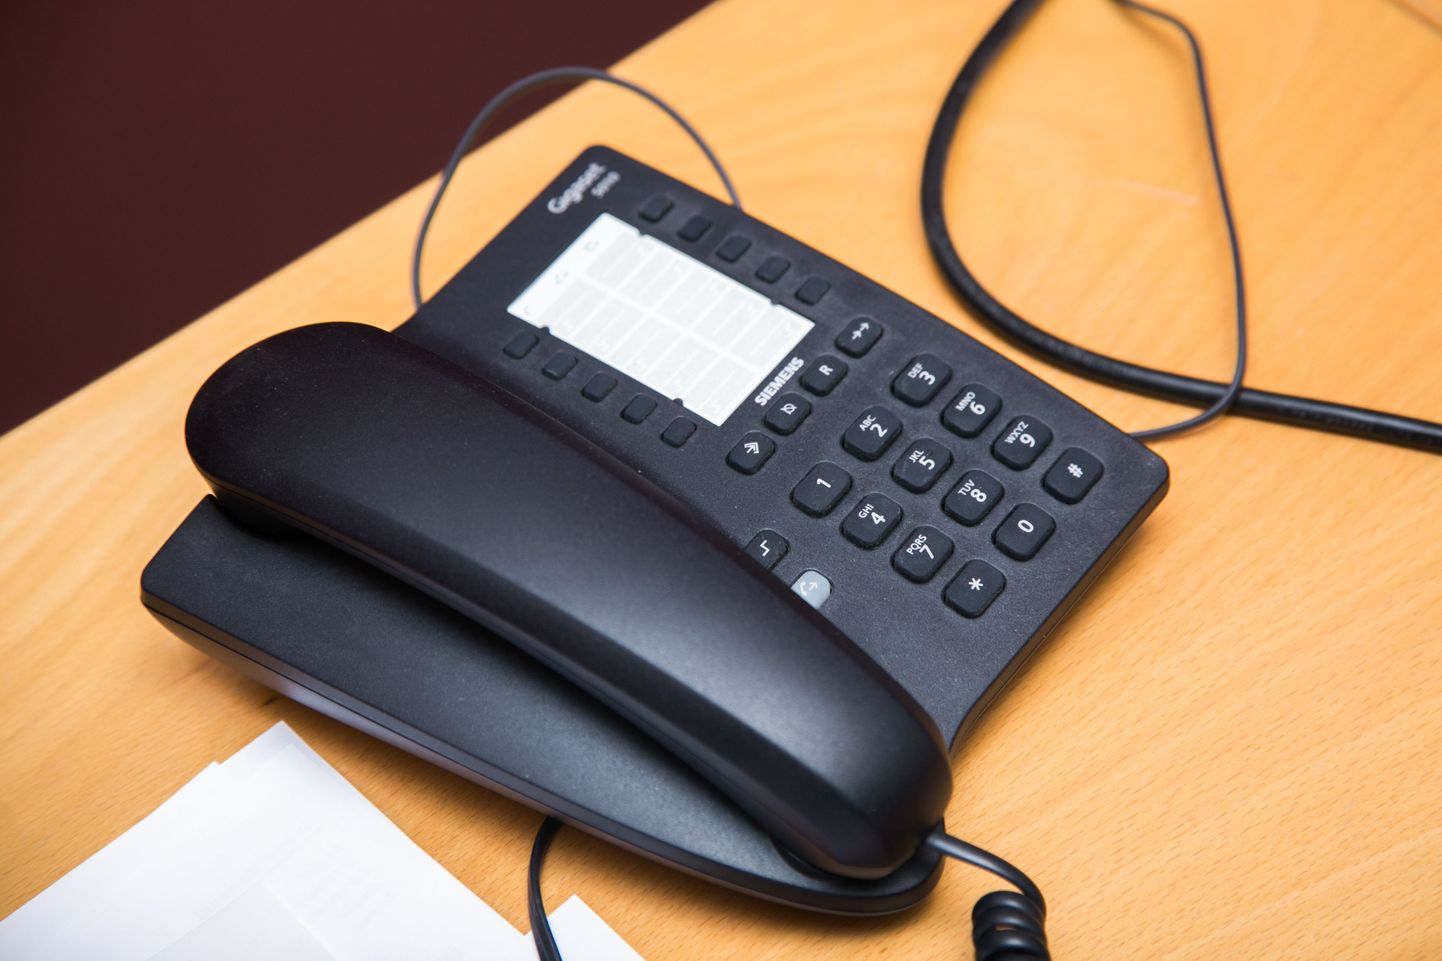 Klienditeeninduse telefoninumbrile helistamine ei tohi olla kõrgendatud tasuga.